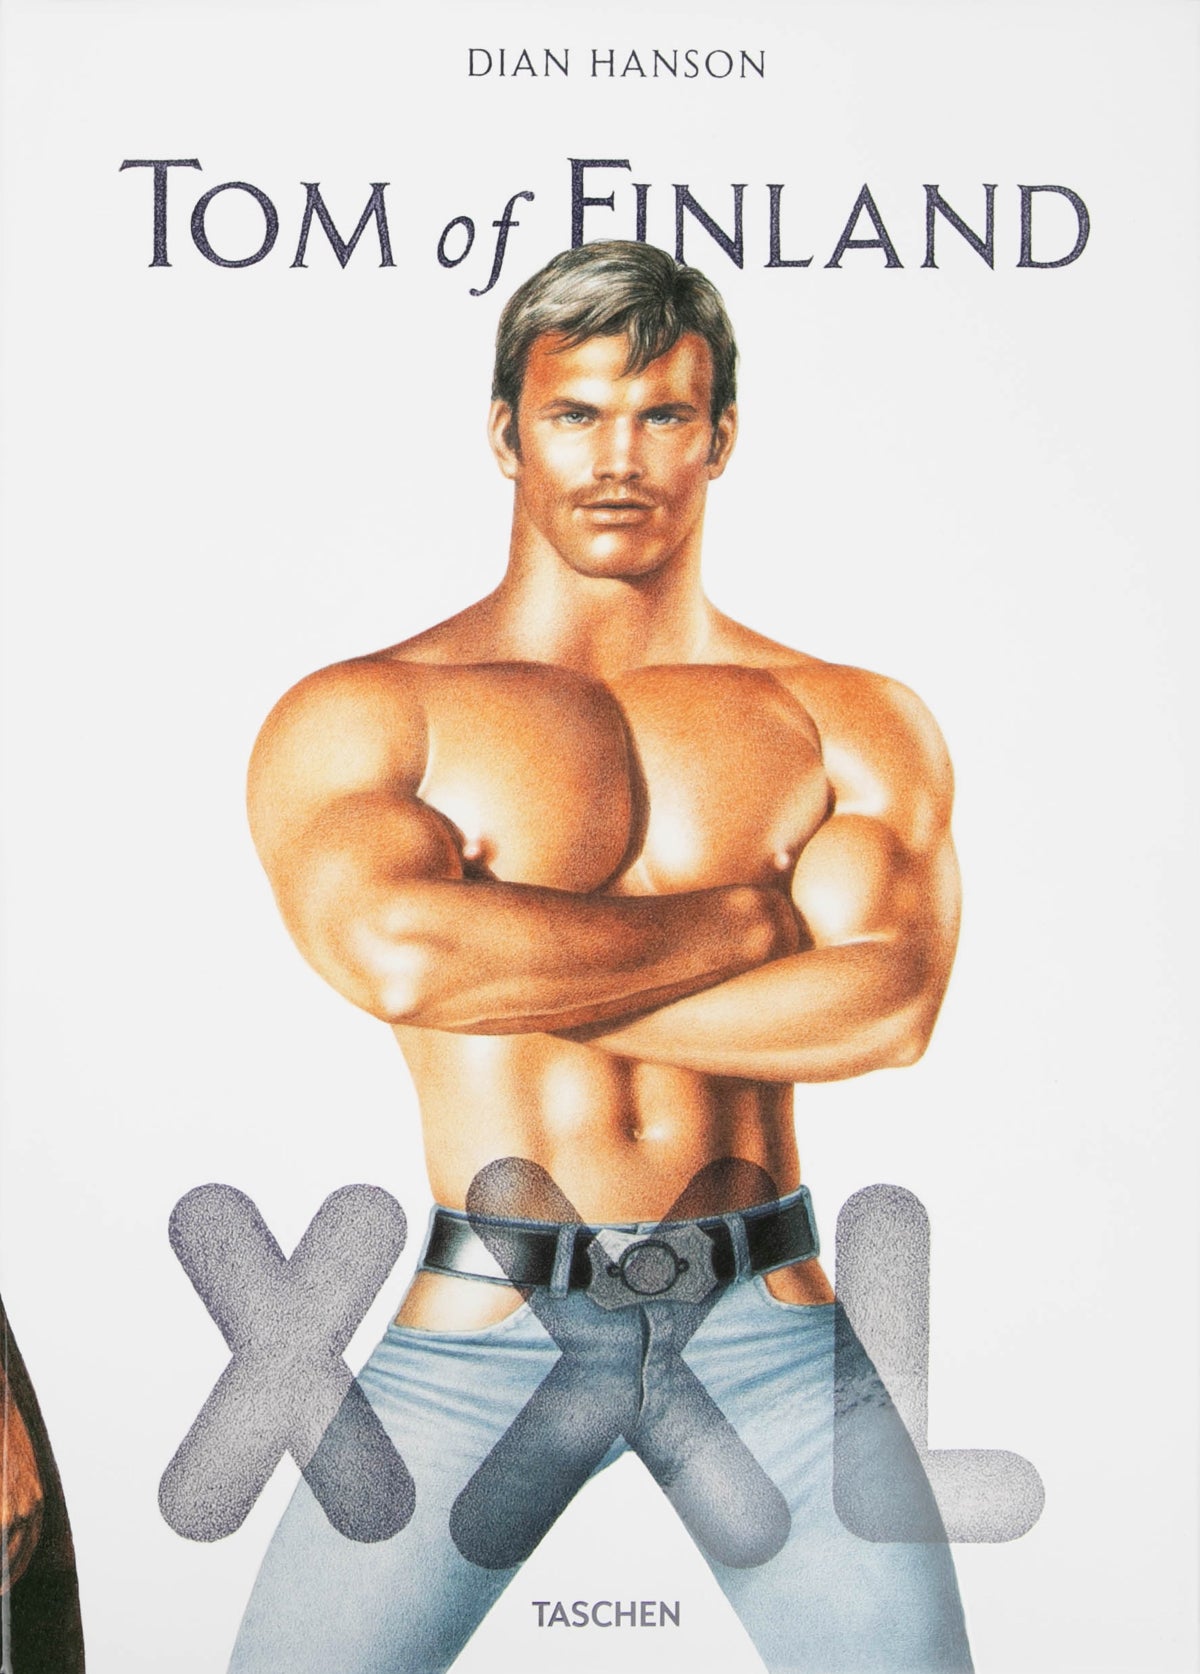 Tom of Finland XXL